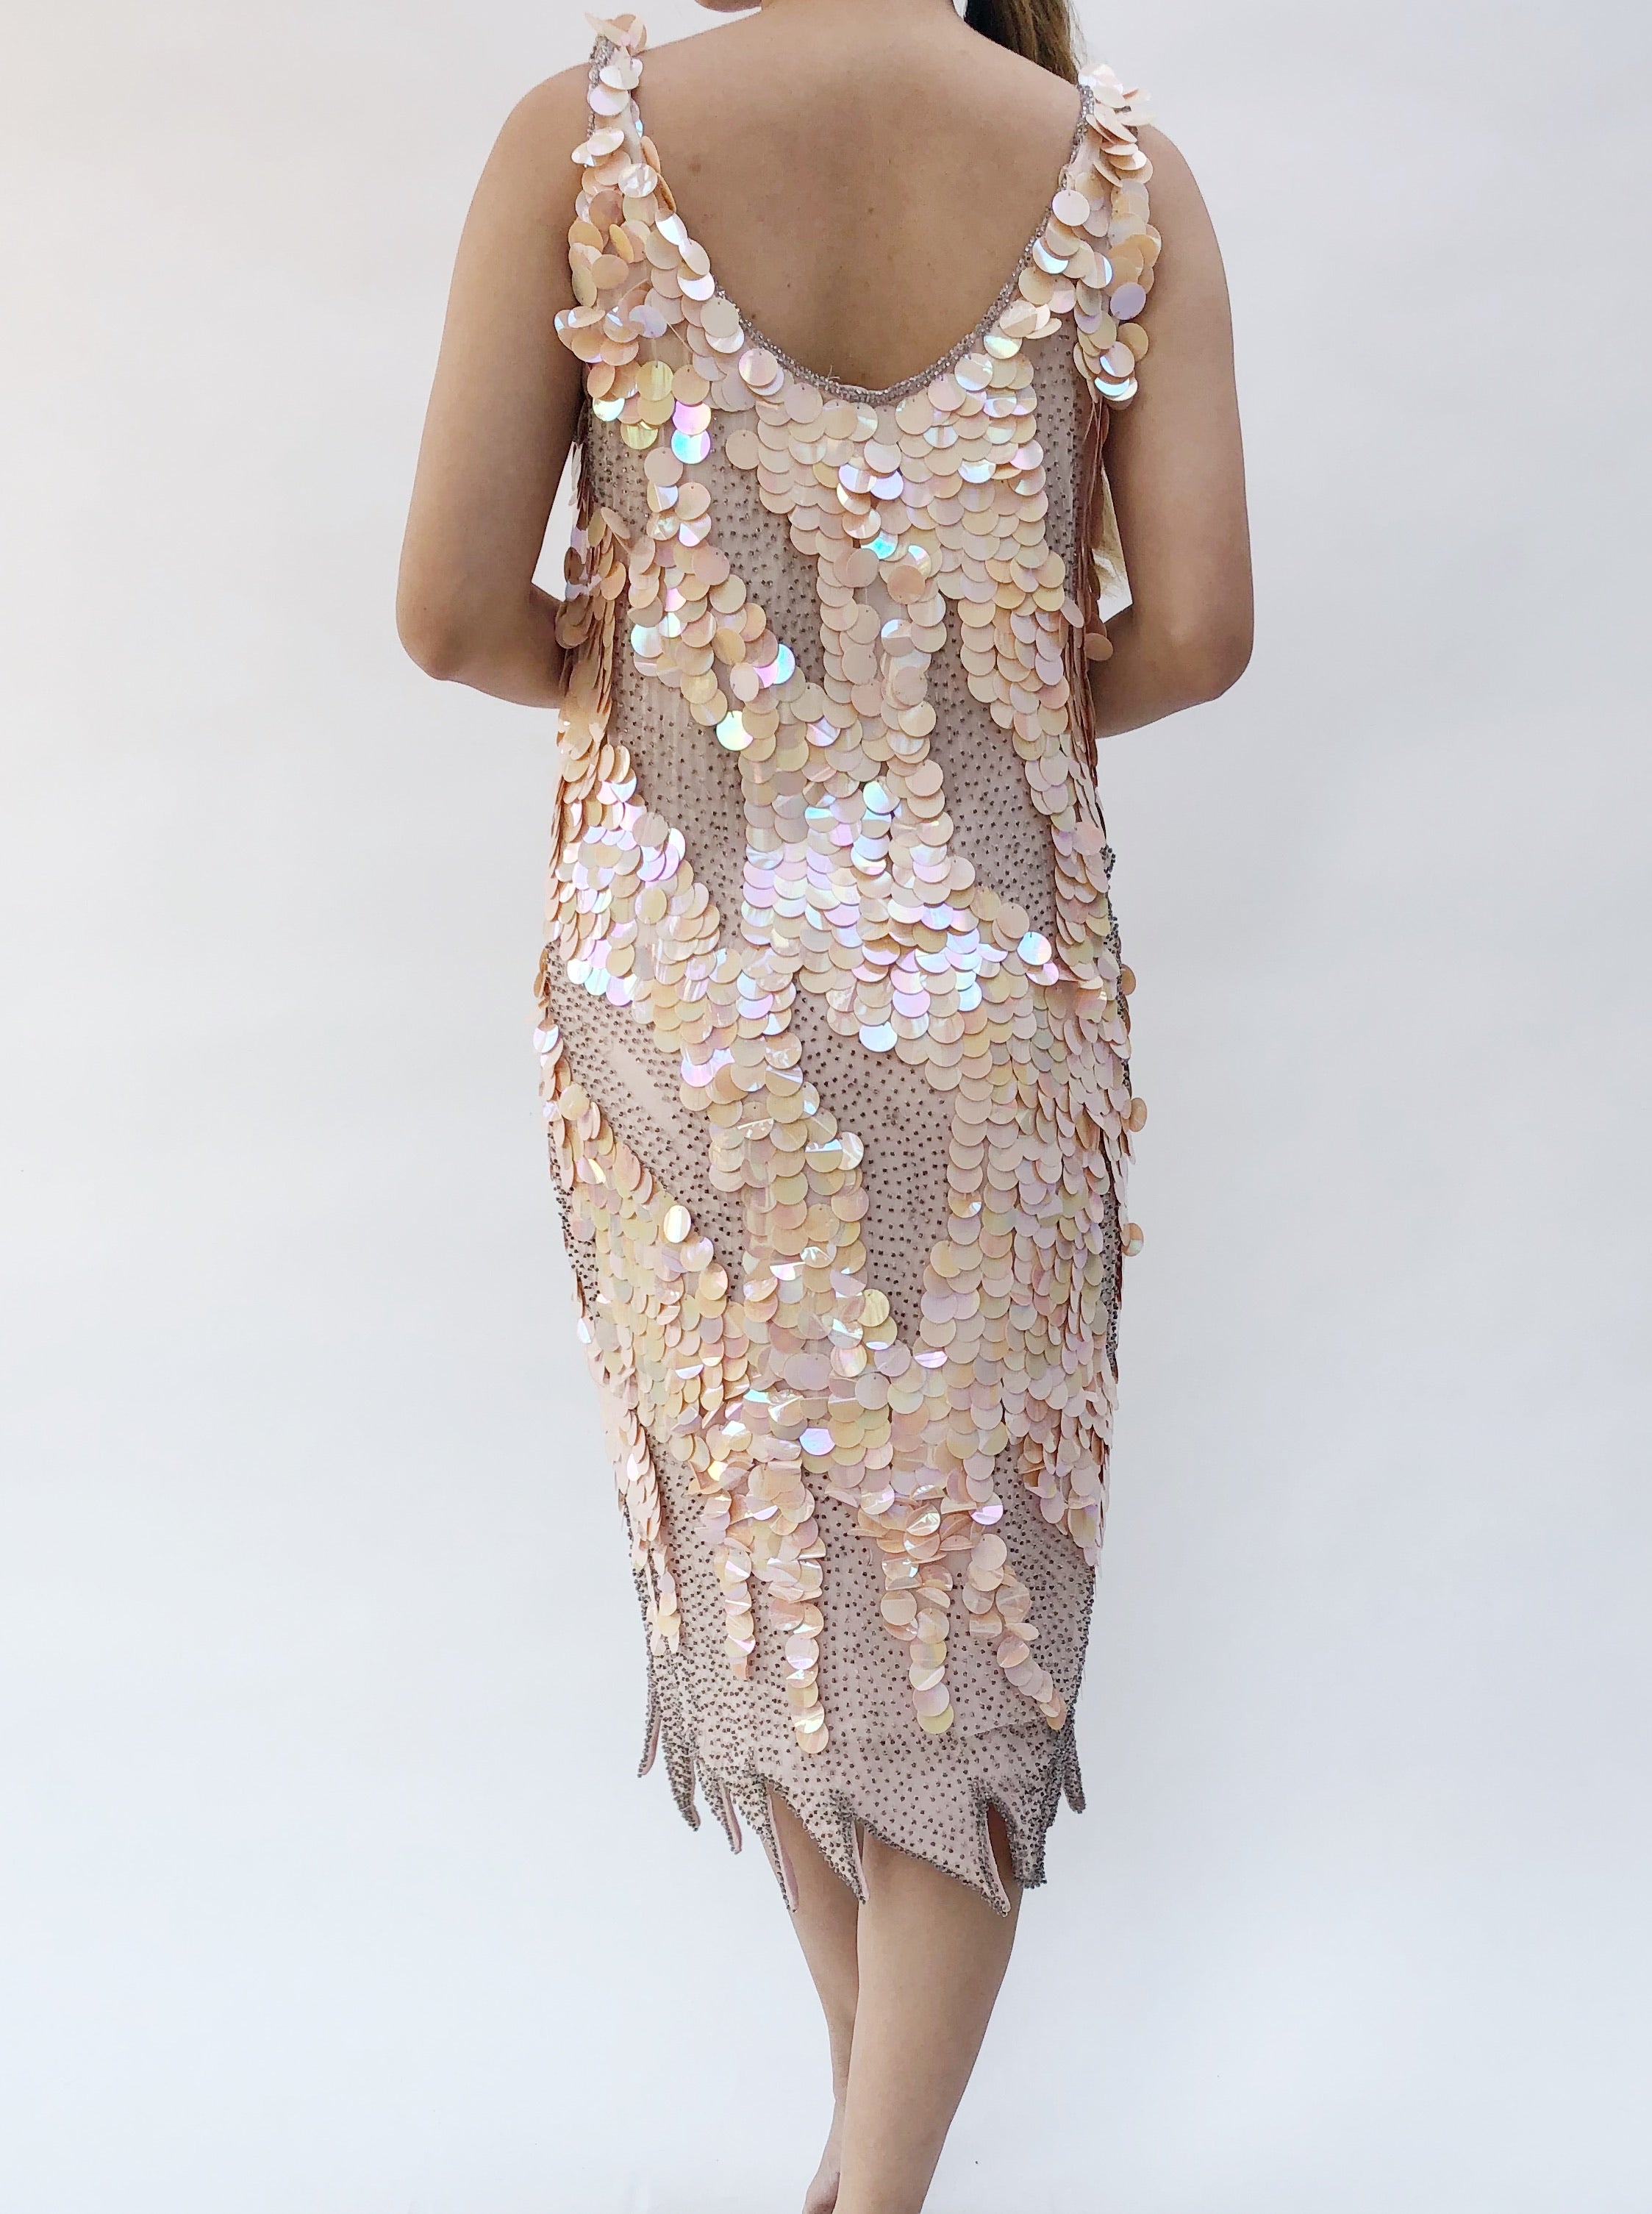 1980s Sequin Embellished Dress - S/M